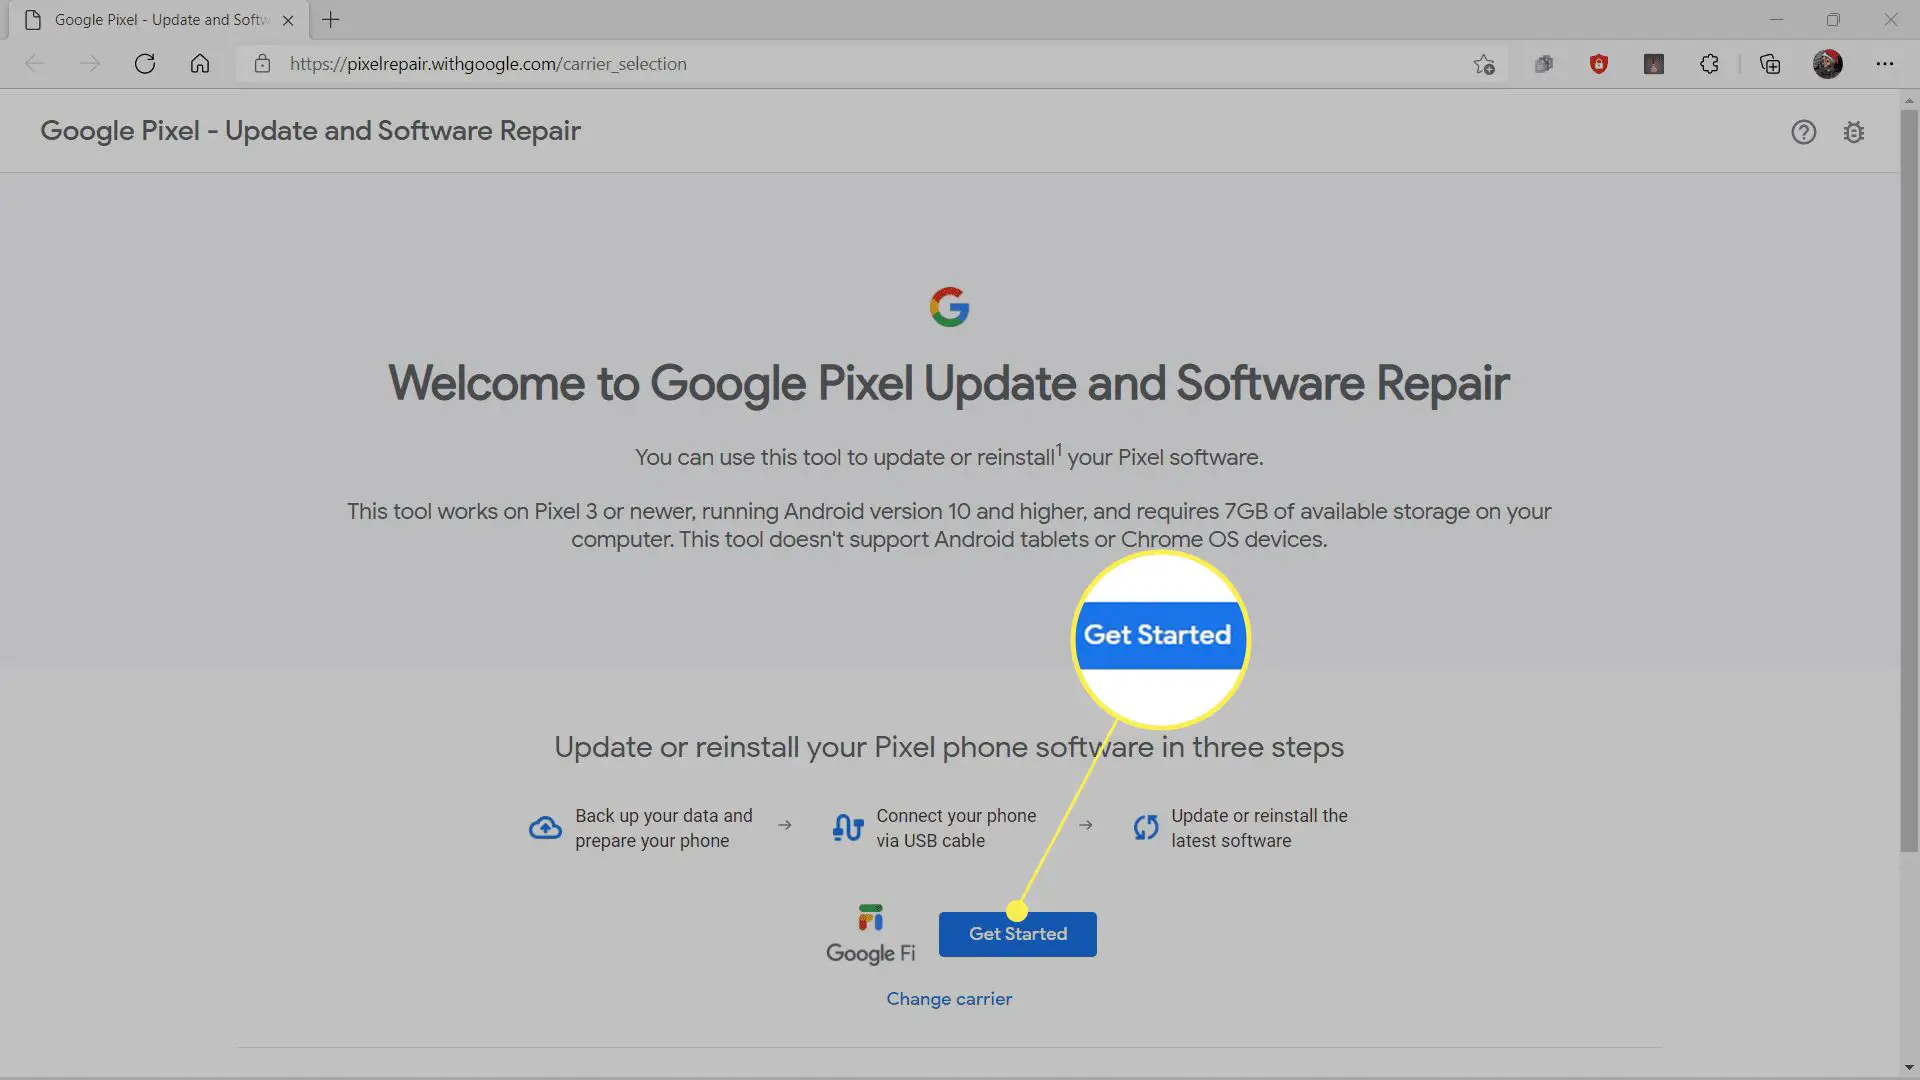 Introdução destacado no site de reparo do Google Pixel.